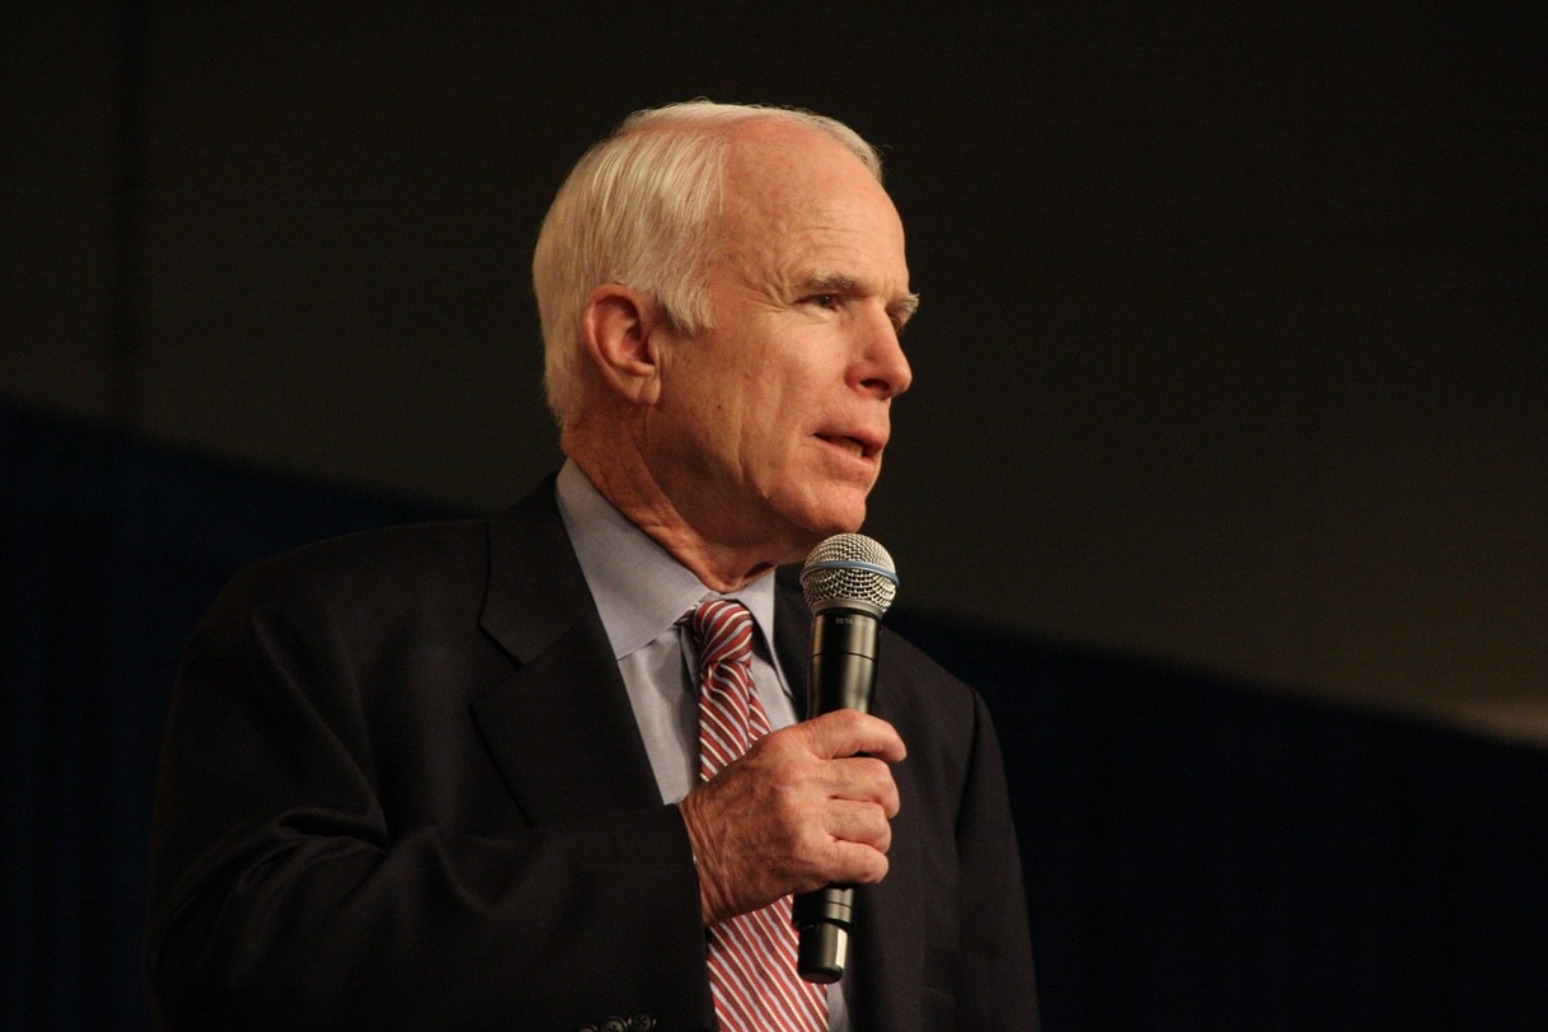 John McCain dies aged 81 